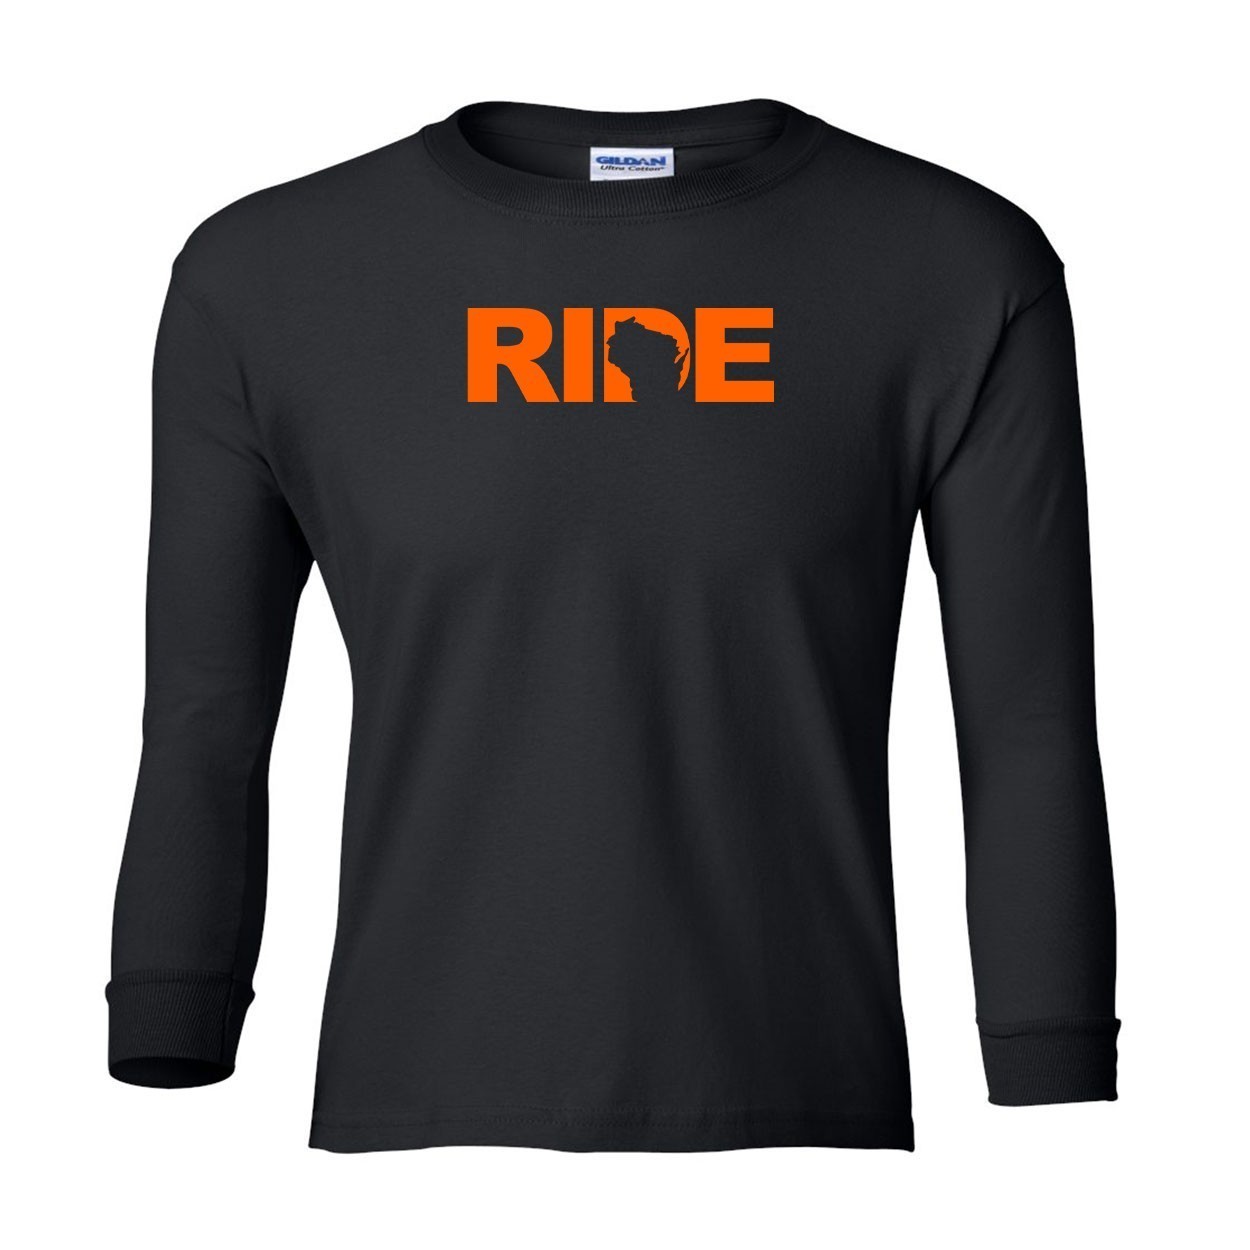 Ride Wisconsin Classic Youth Unisex Long Sleeve T-Shirt Black (Orange Logo)